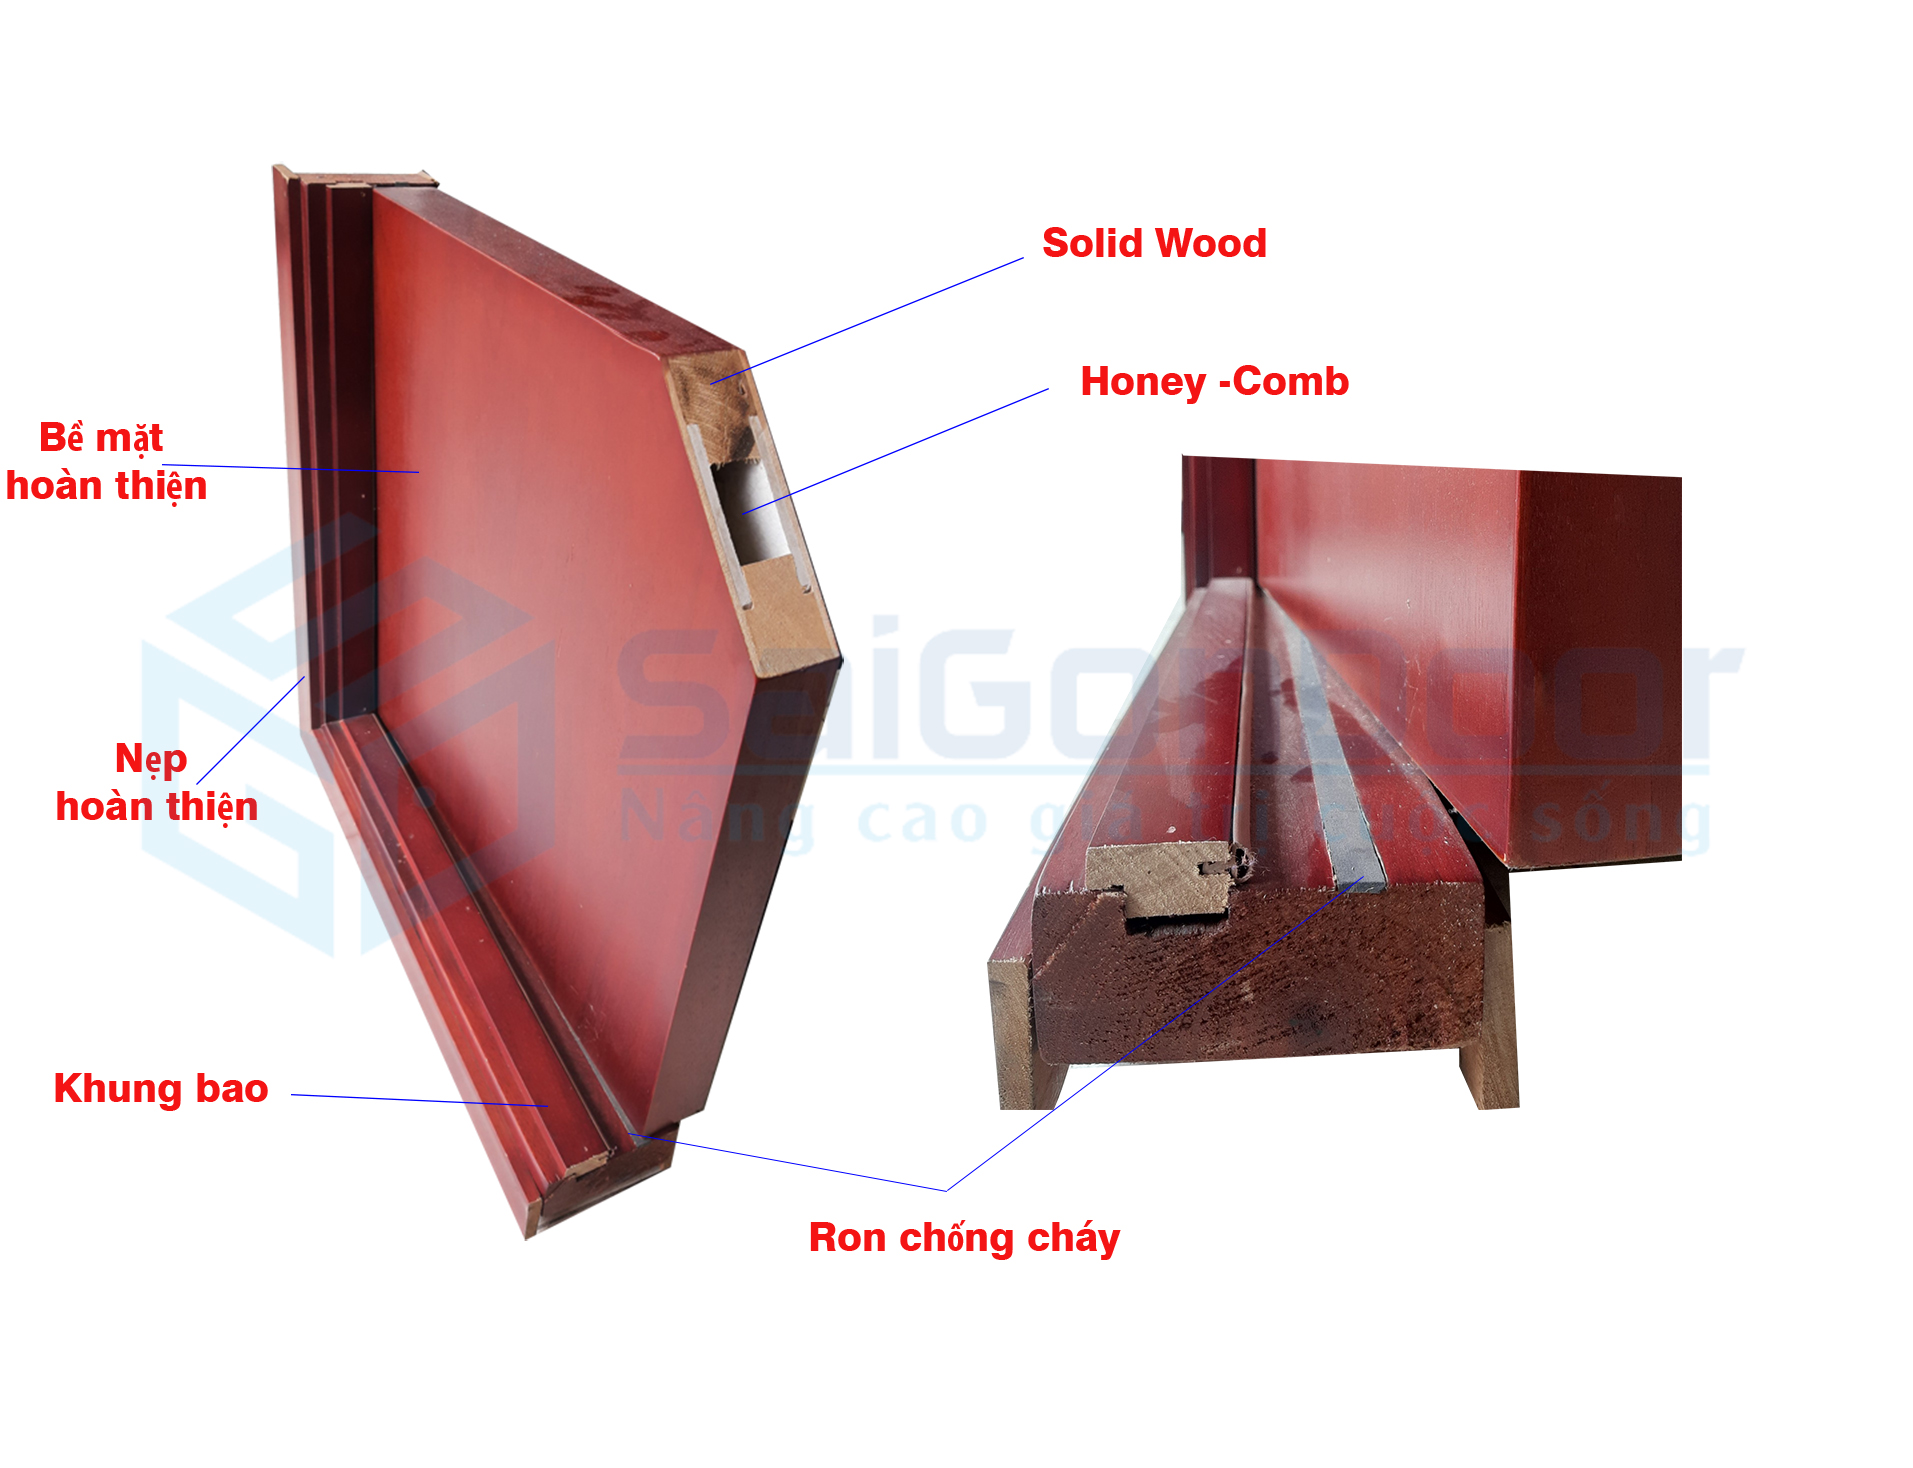 Mặt cắt cấu tạo cửa gỗ chống cháy có Eron chống cháy